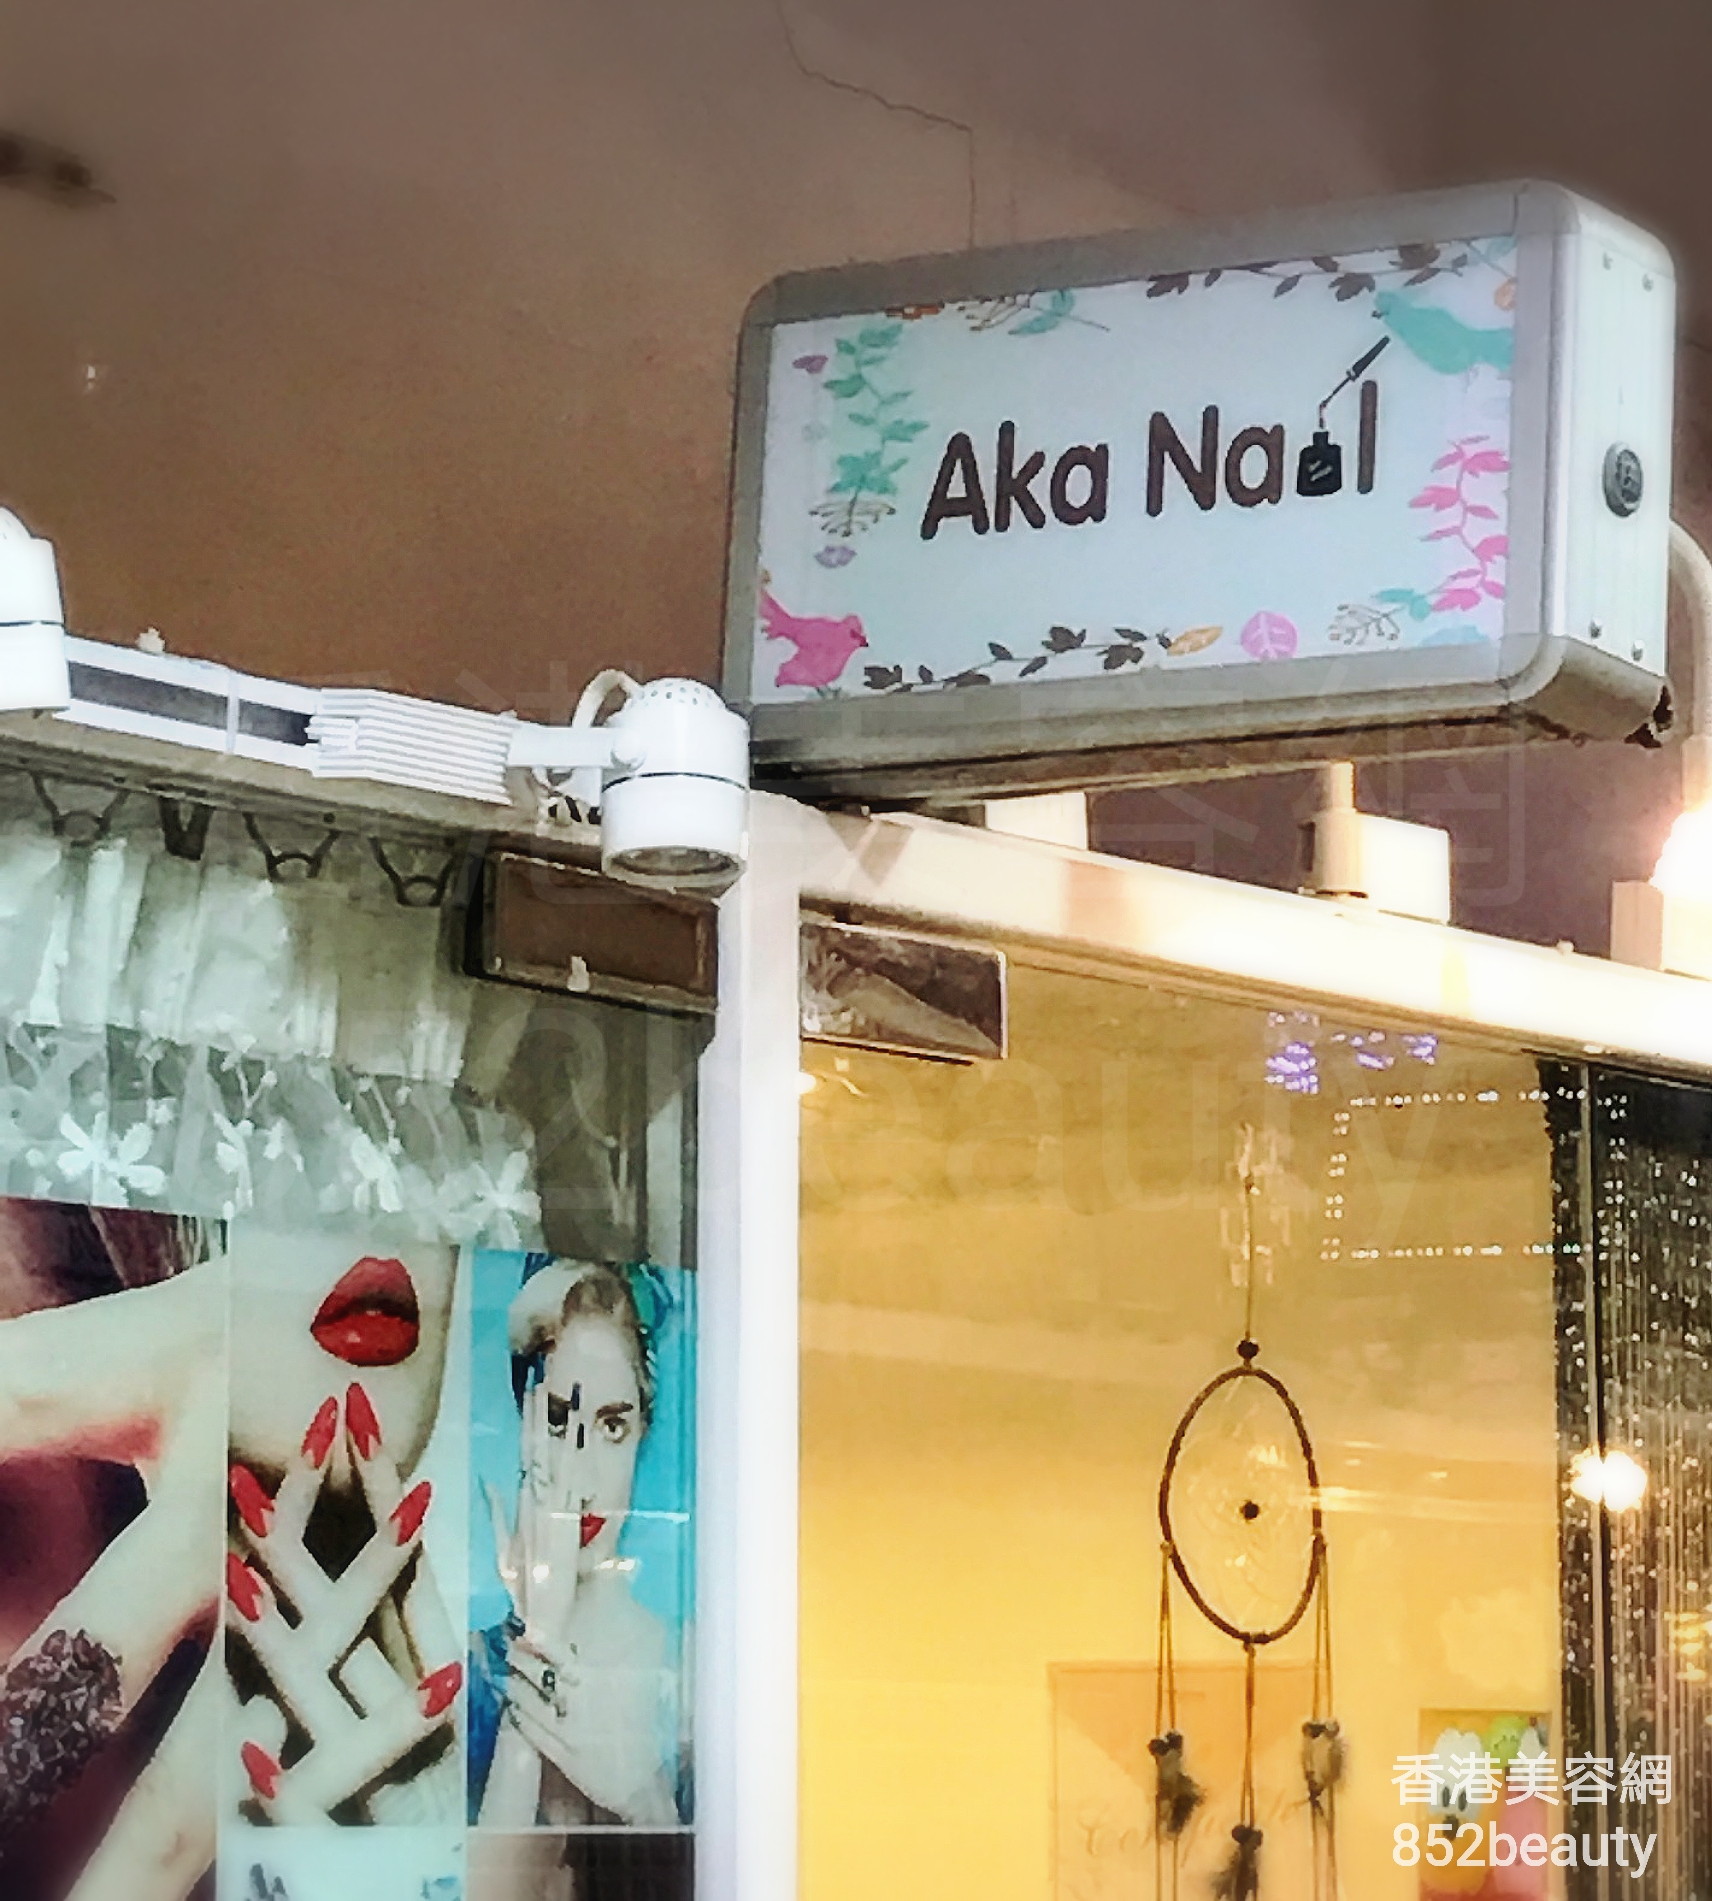 香港美容網 Hong Kong Beauty Salon 美容院 / 美容師: Aka Nail